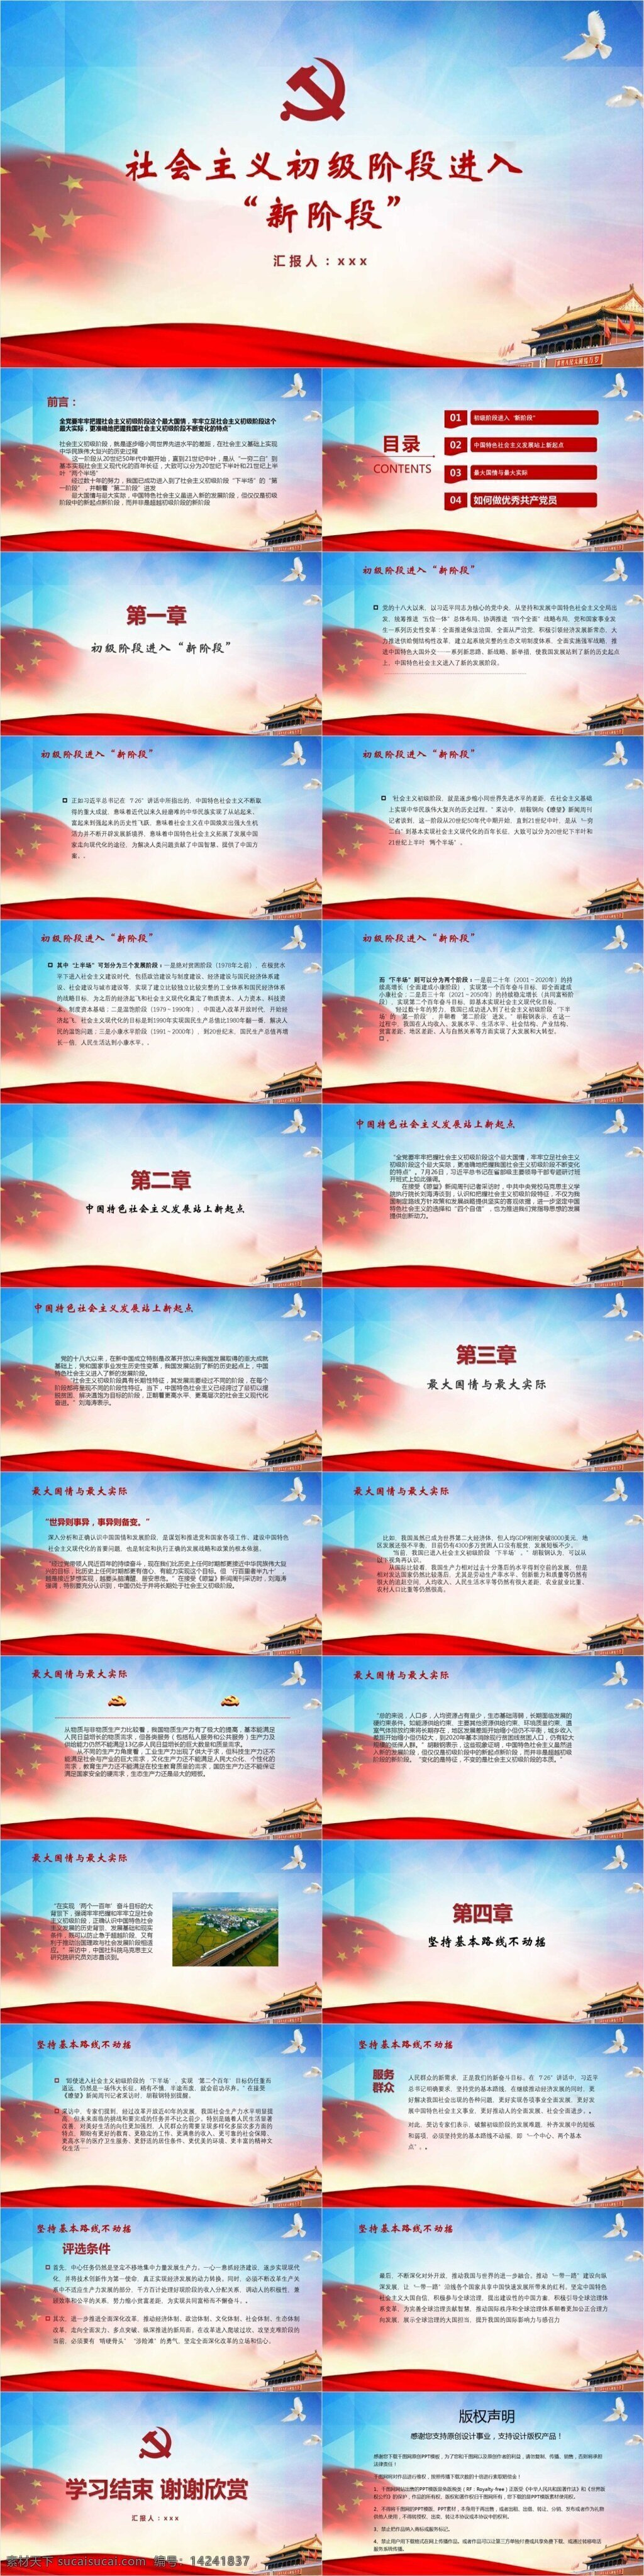 中国 特色 社会主义 初级 新 阶段 模板 范本 大国外交 服务群众 共产党员 两个一百年 瞭望 初级阶段